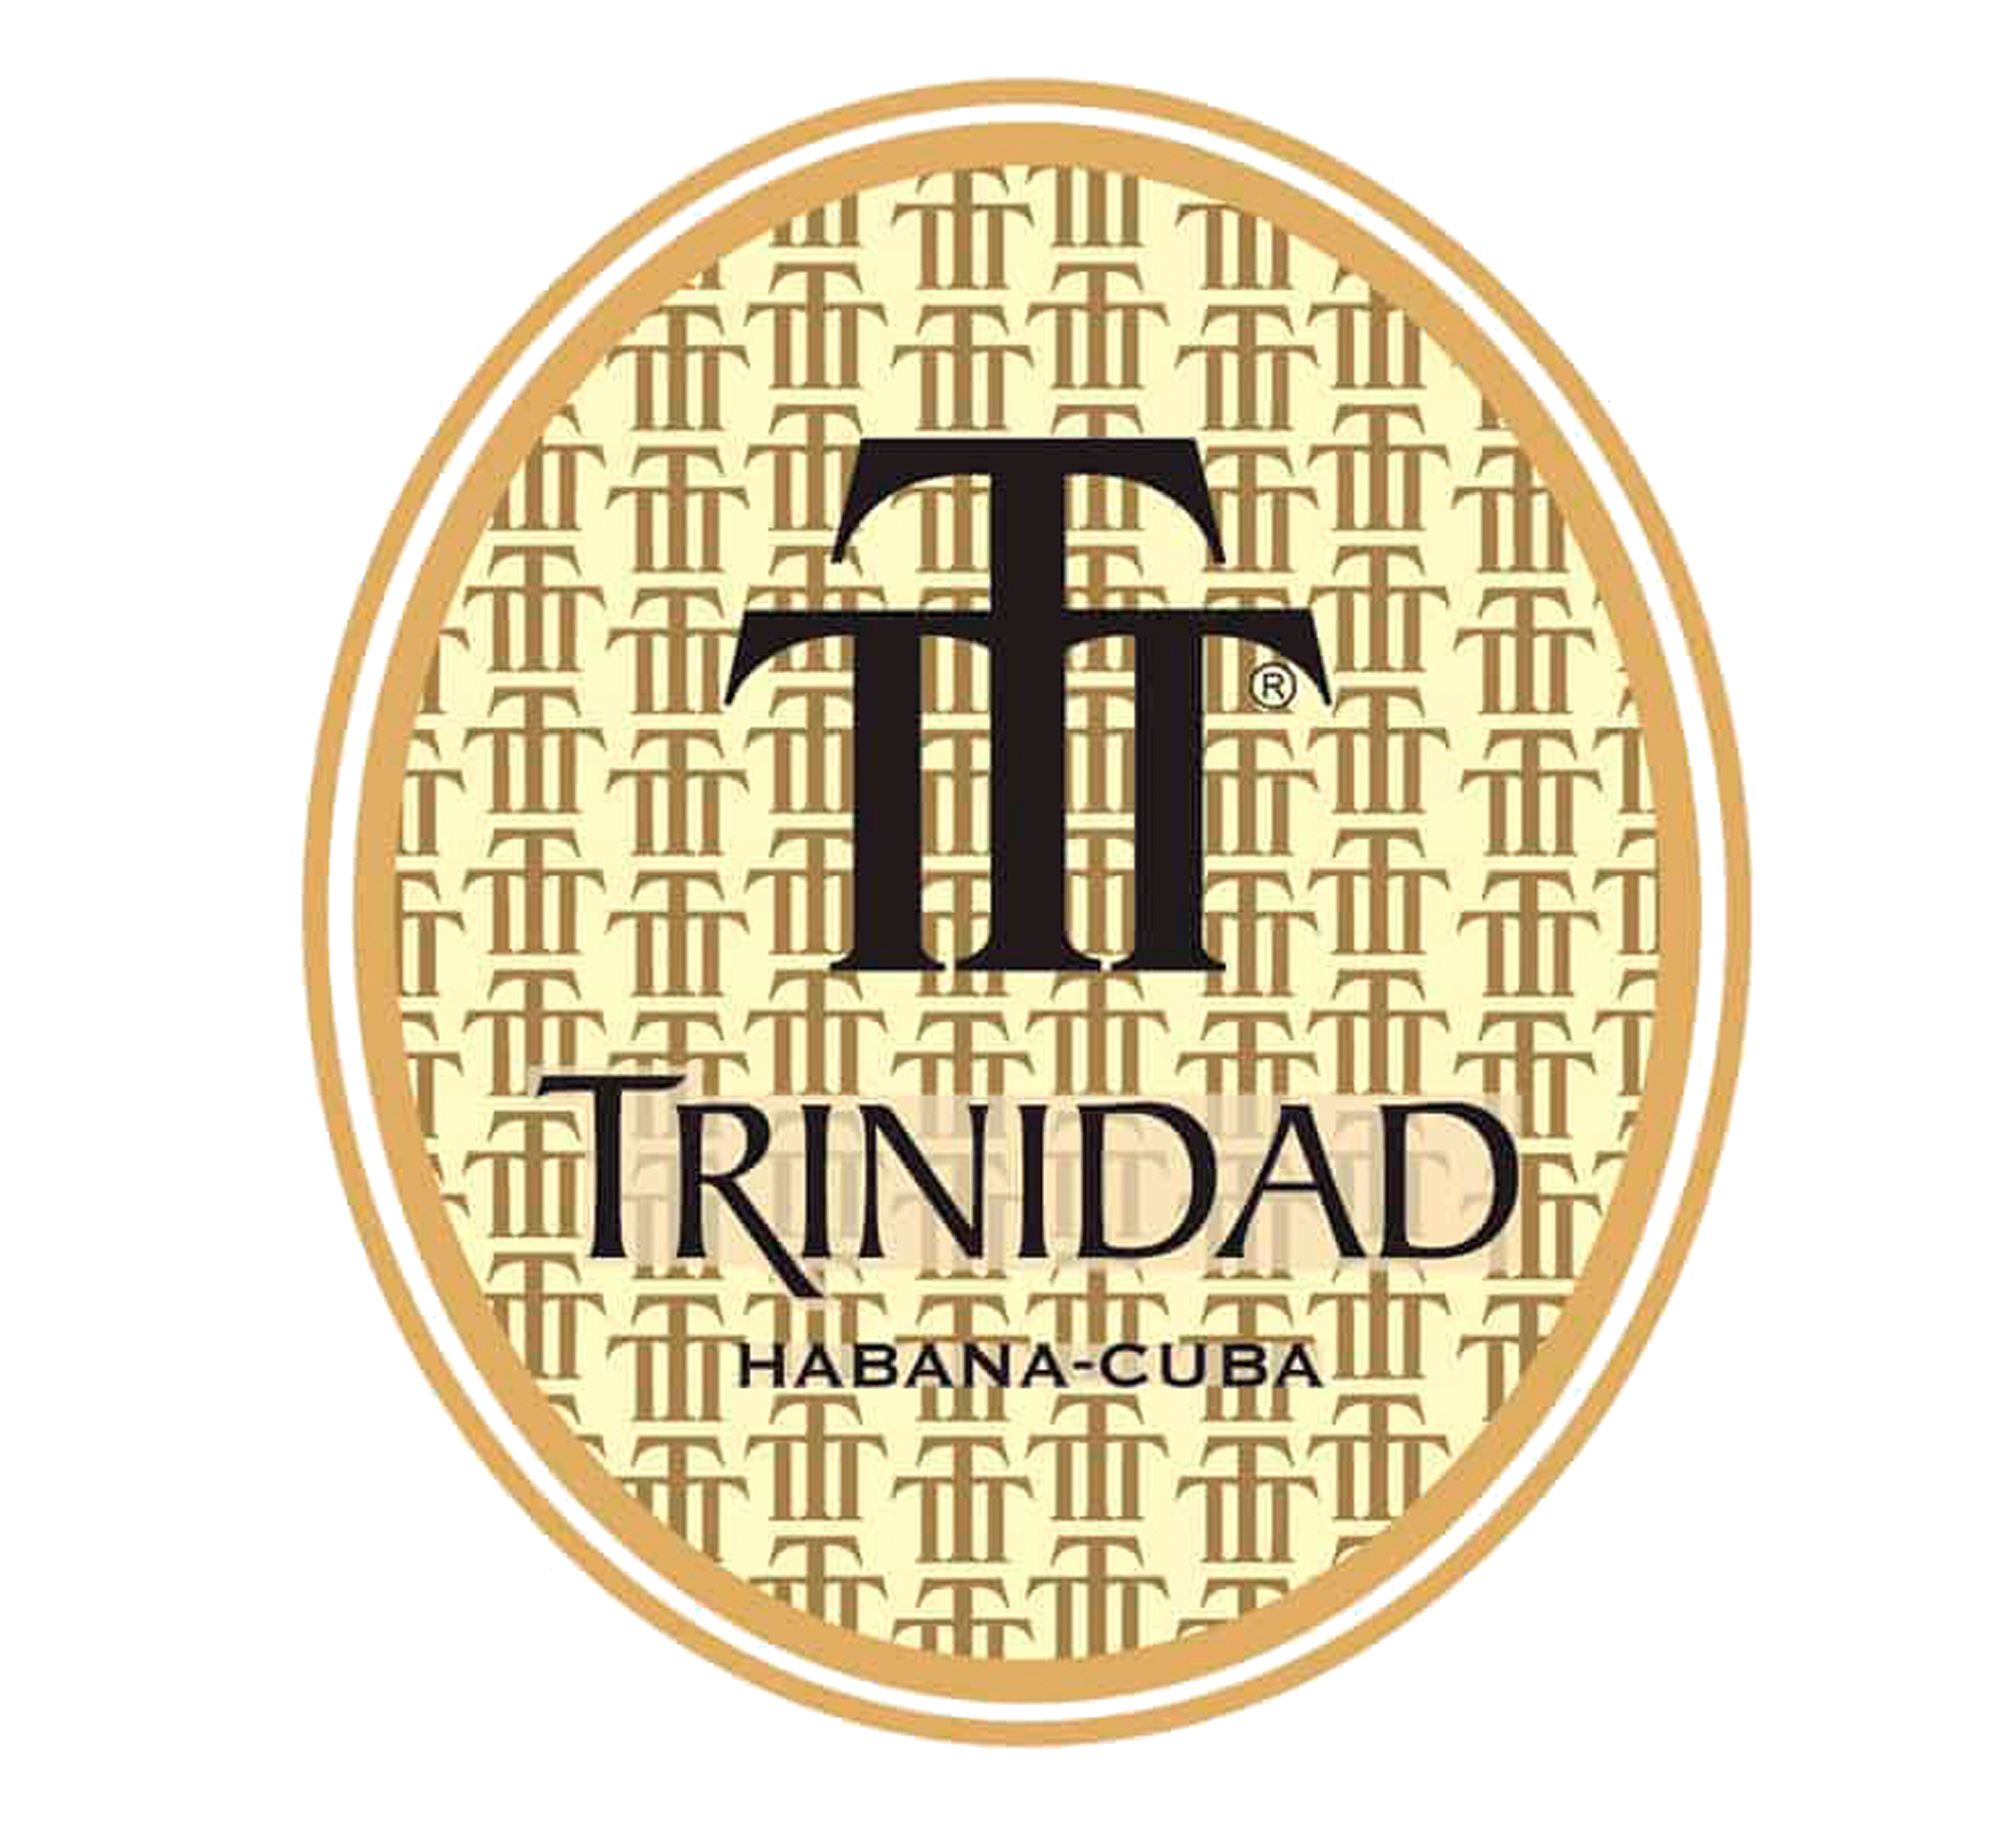 TRINIDAD (Cuba)